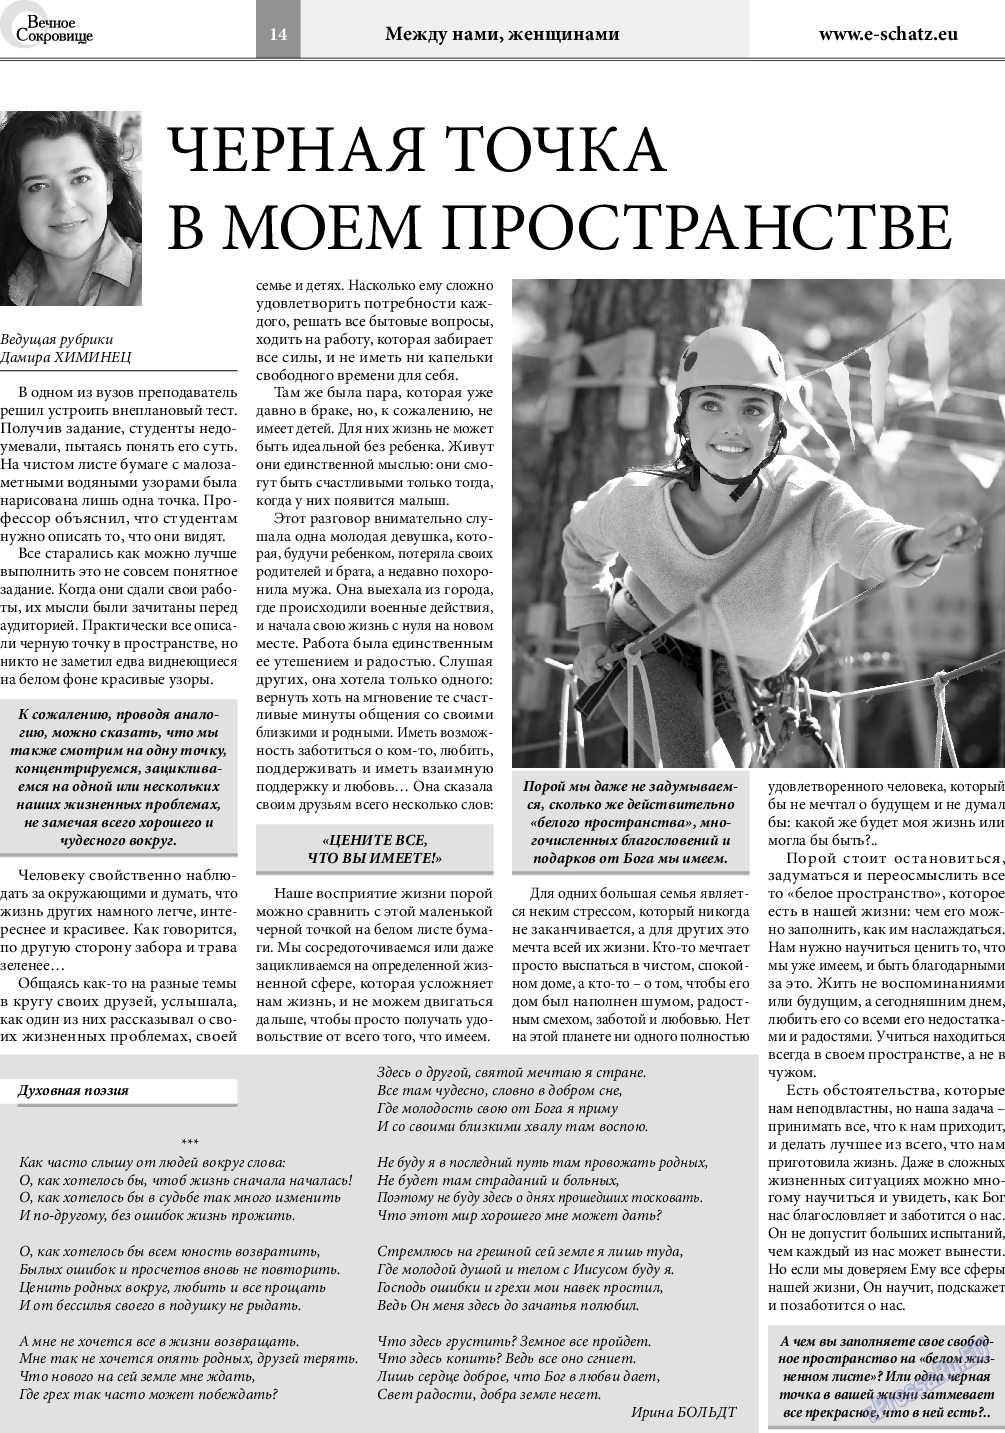 Вечное сокровище, газета. 2018 №3 стр.14